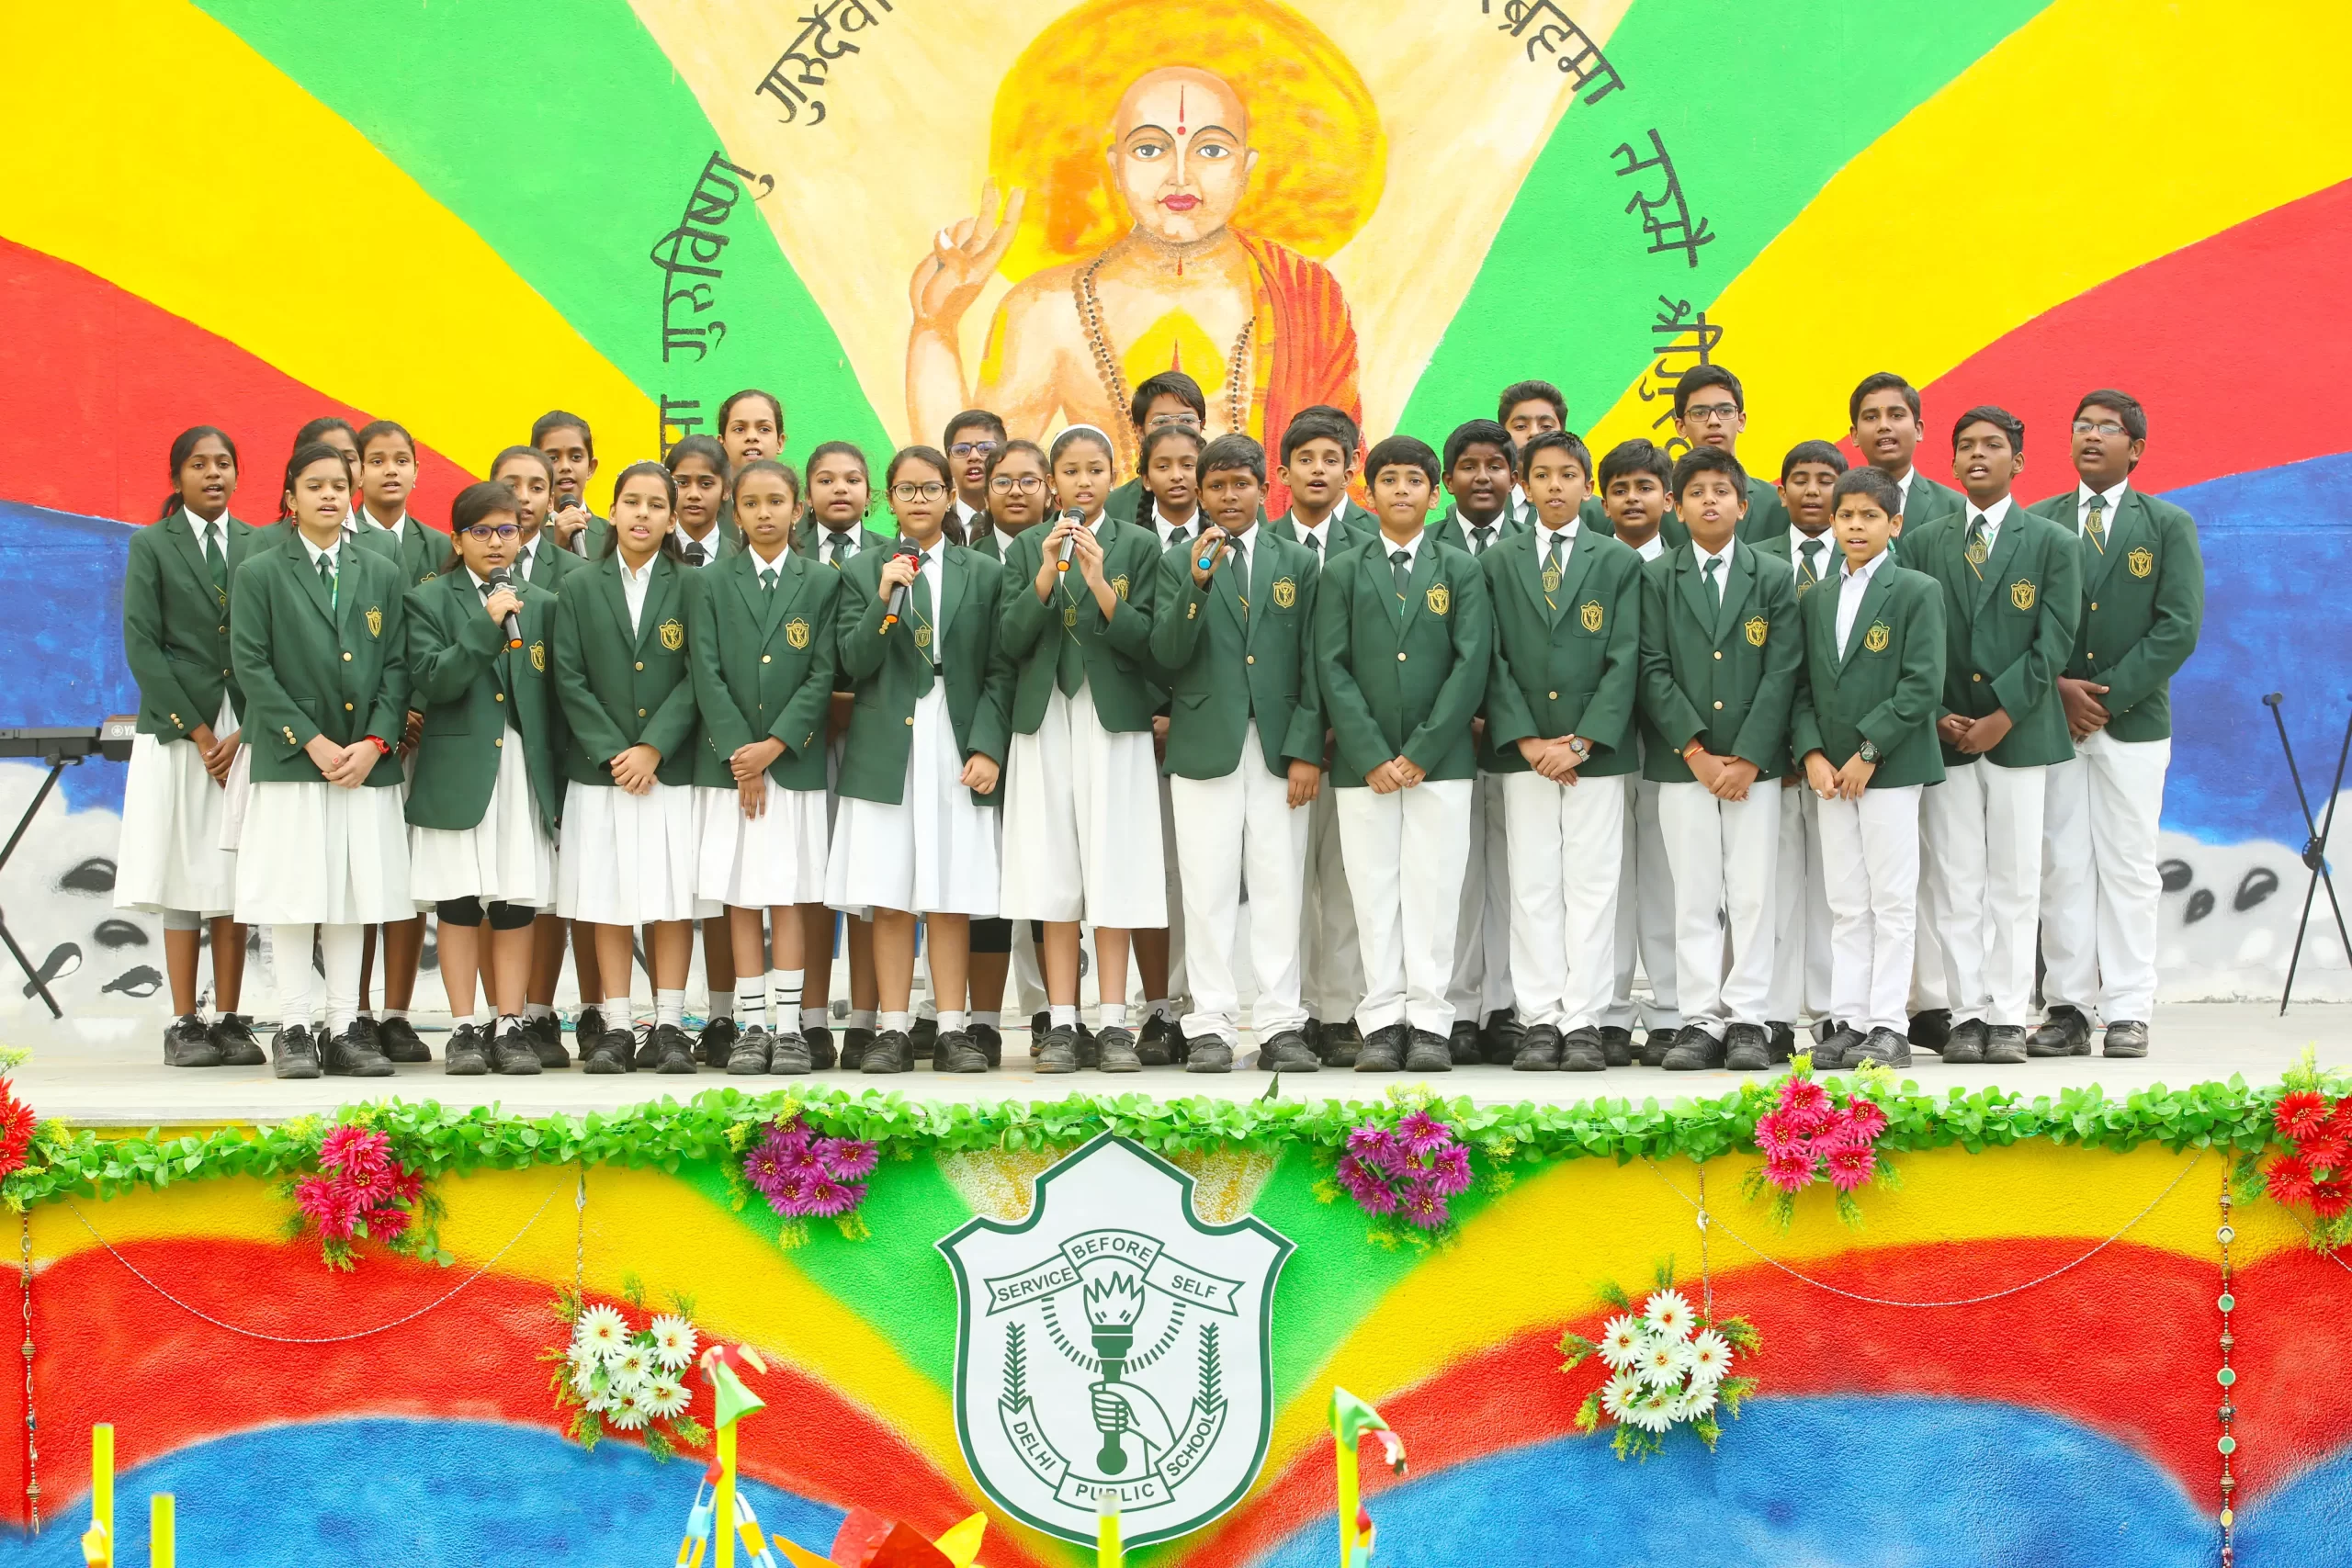 Students of Delhi Public School, Warangal singing in choir on the occasion of Guru Purnima.